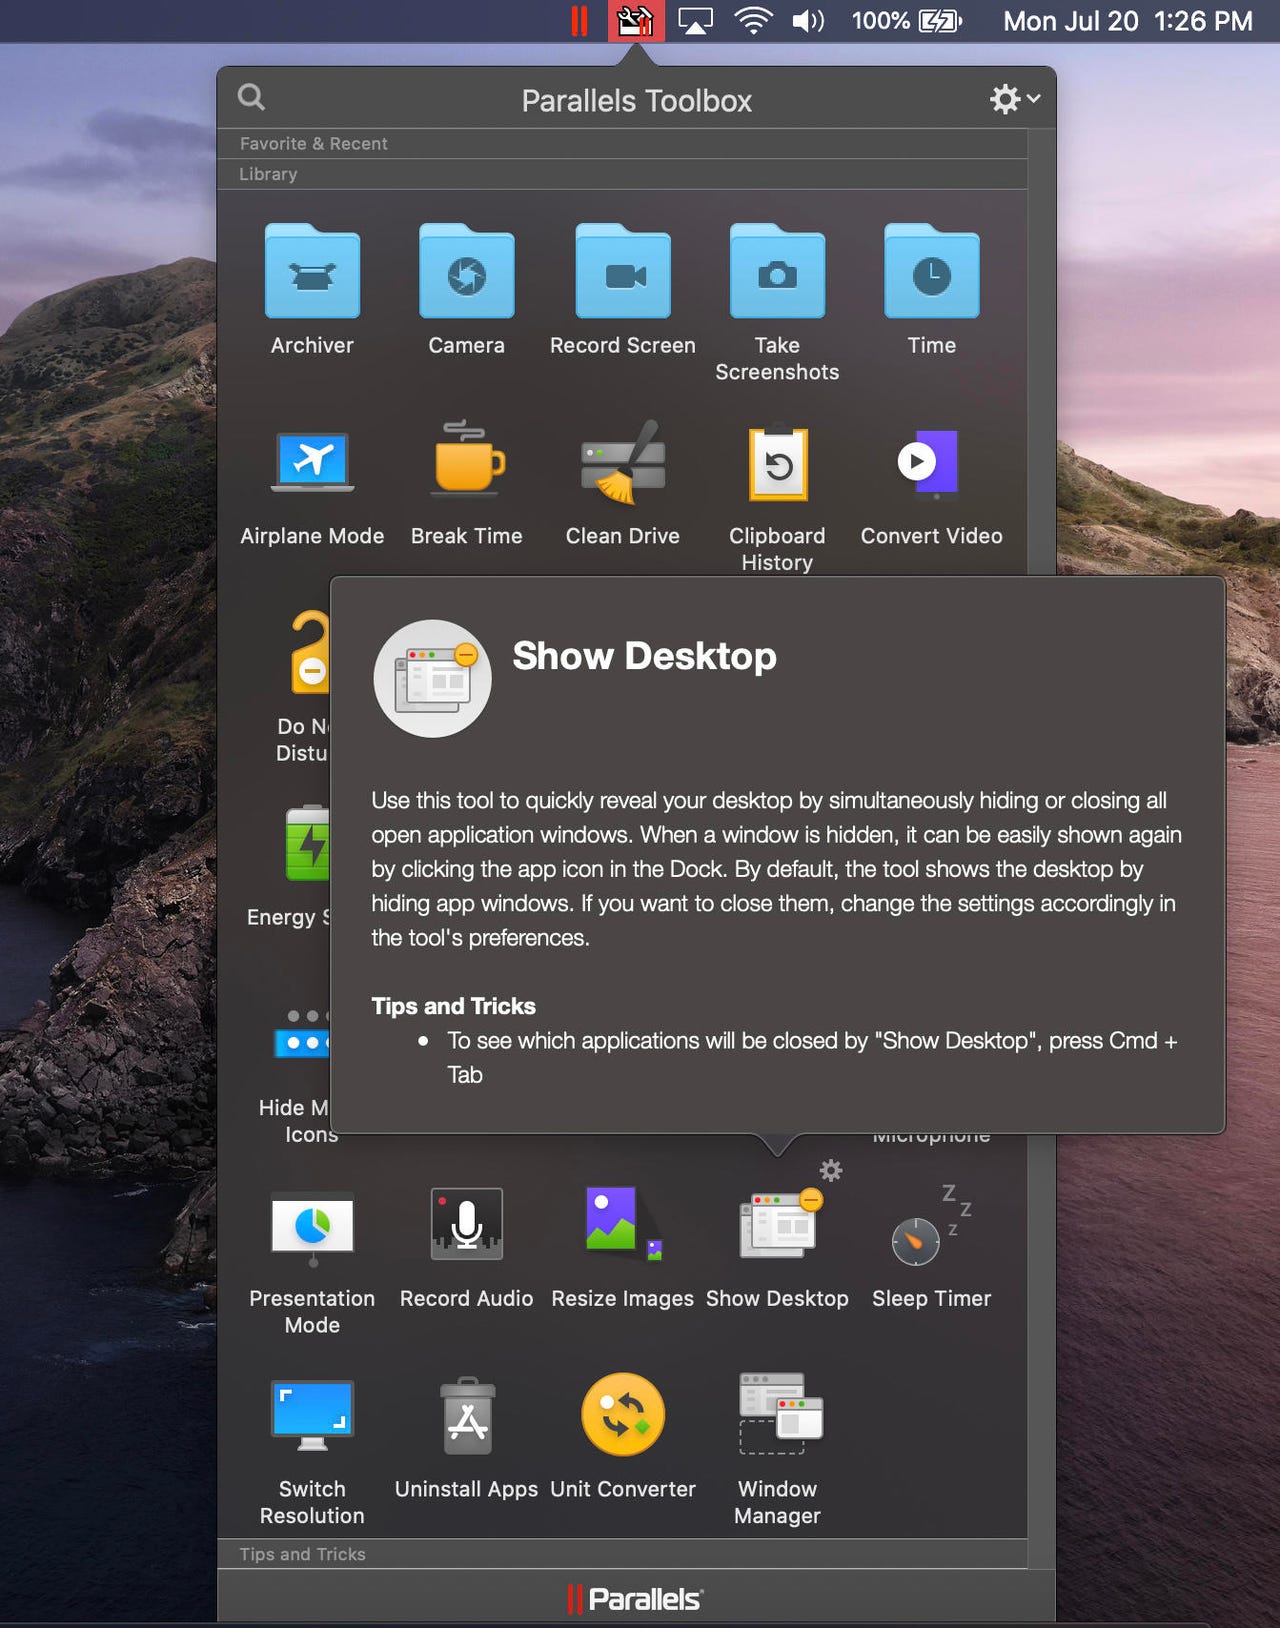 parallels-toolbox-show-desktop-macos-screenshot